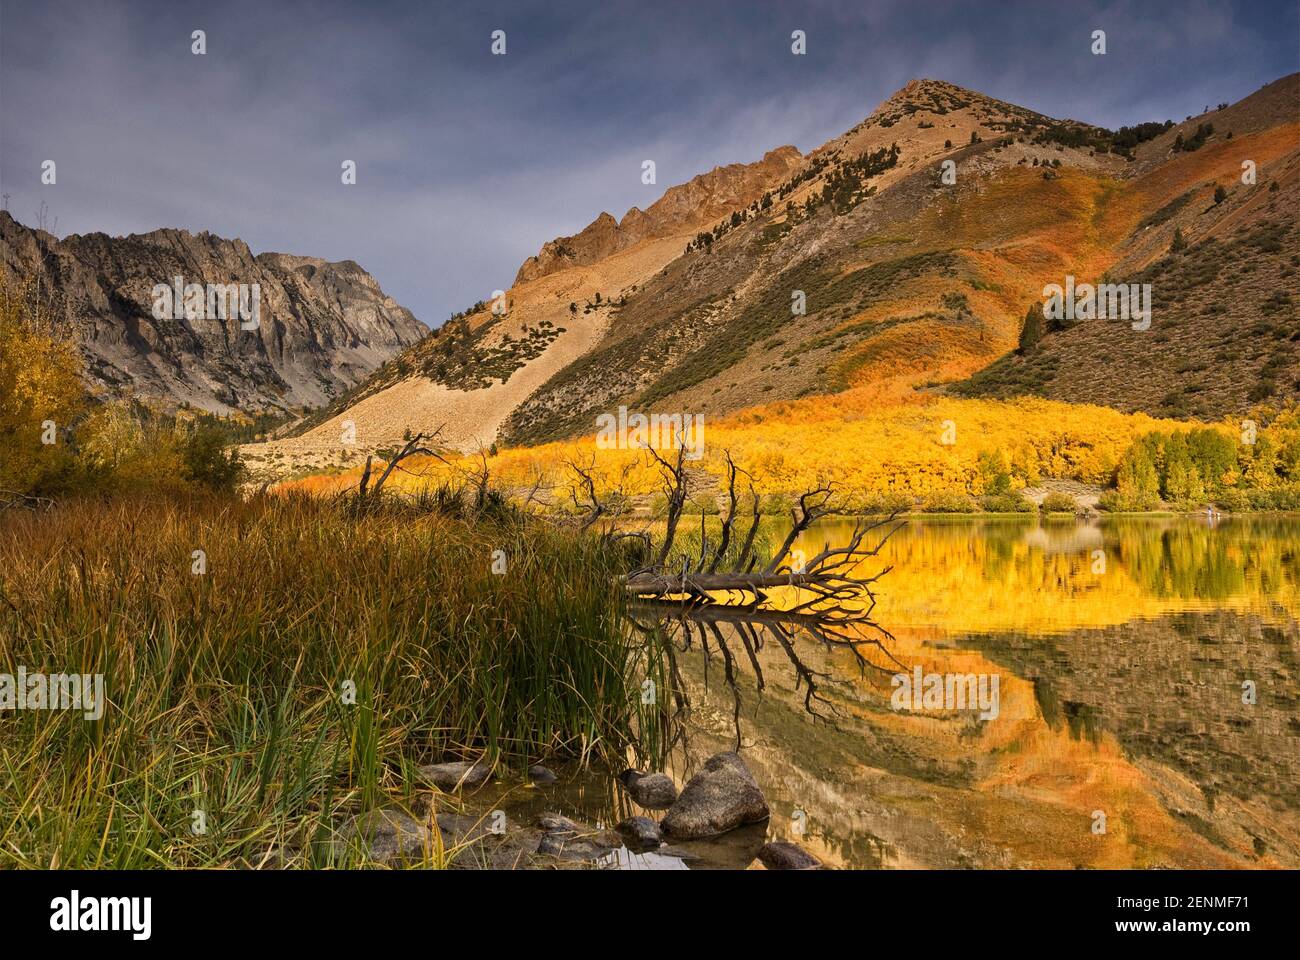 Dans le bassin nord du lac Sabrina en automne Évolution Région, John Muir Wilderness, est de la Sierra Nevada, Californie, USA Banque D'Images